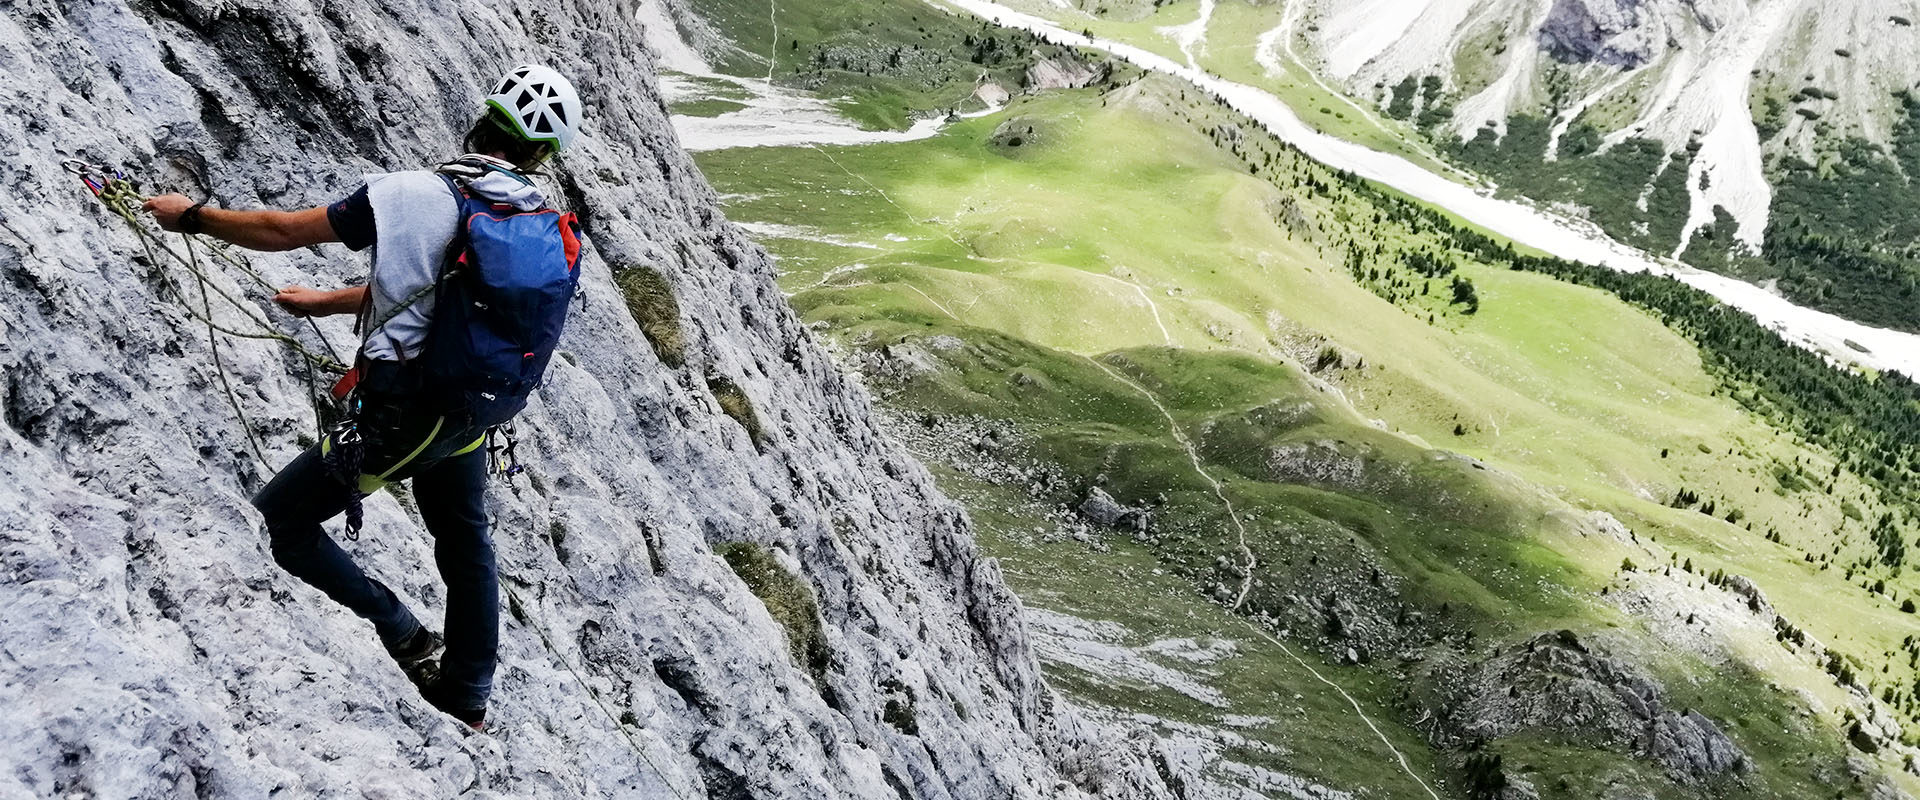 Alpinklettern in grüner Almlandschaft und grauem Kalkgestein.